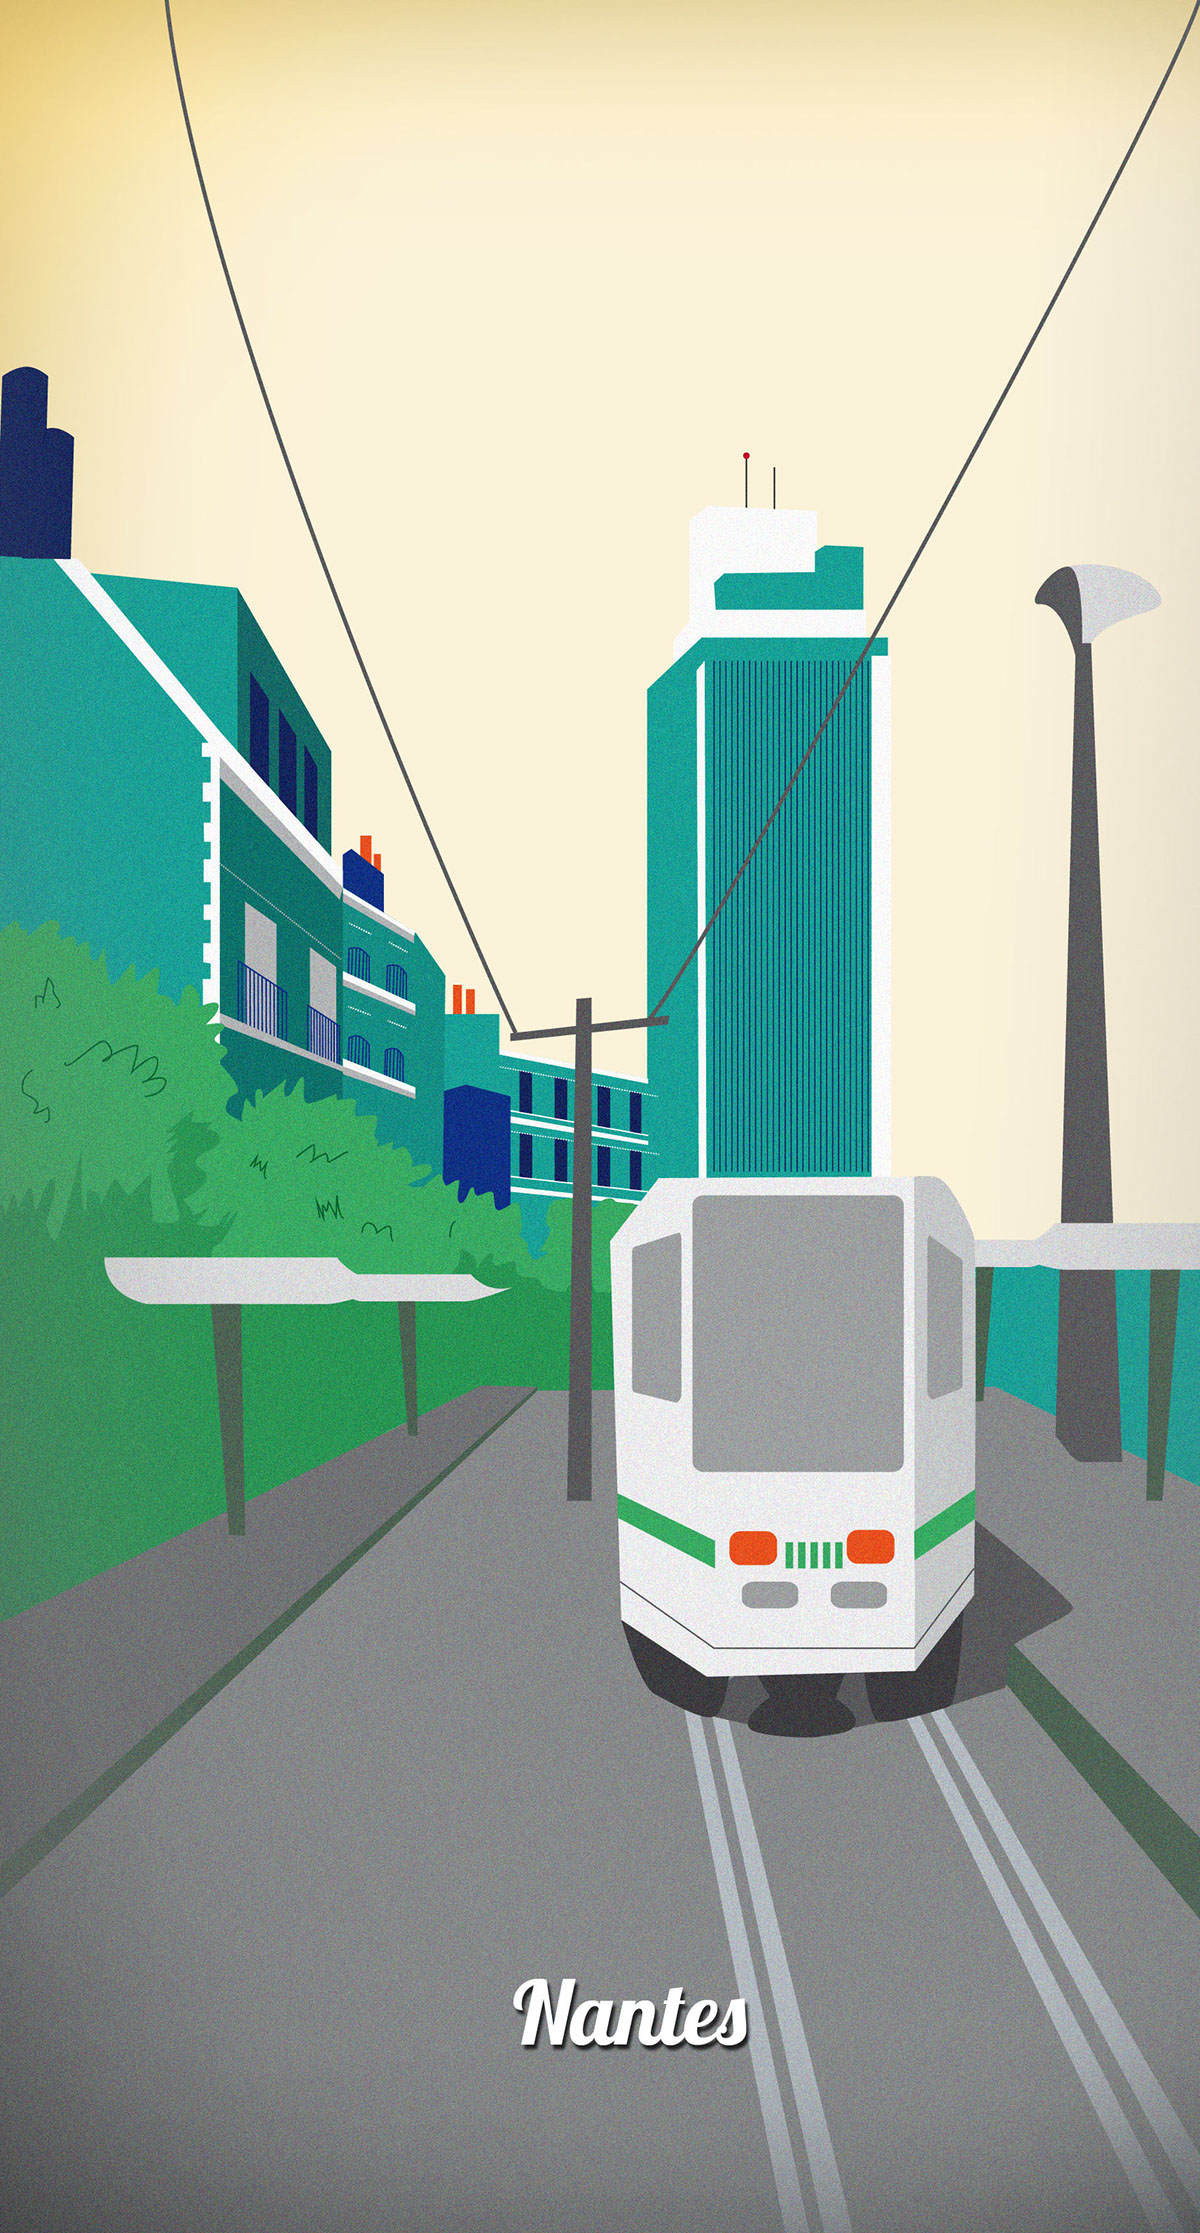 Nantes draw vector tramway cablecar san francisco California poster icone city